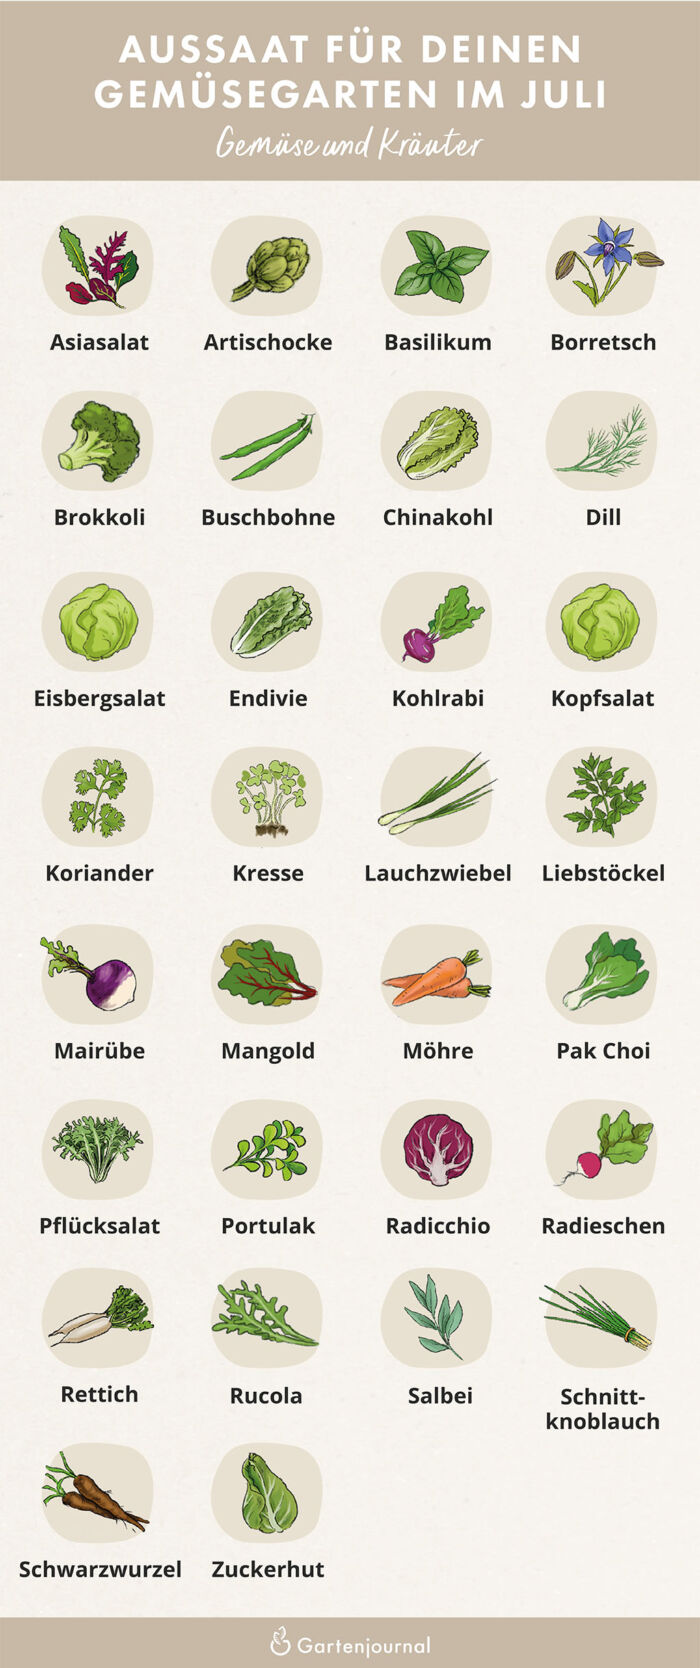 Illustrierter Gartenkalender der zeigt, welche Gemüse und Kräuter im Juli ausgesät werden